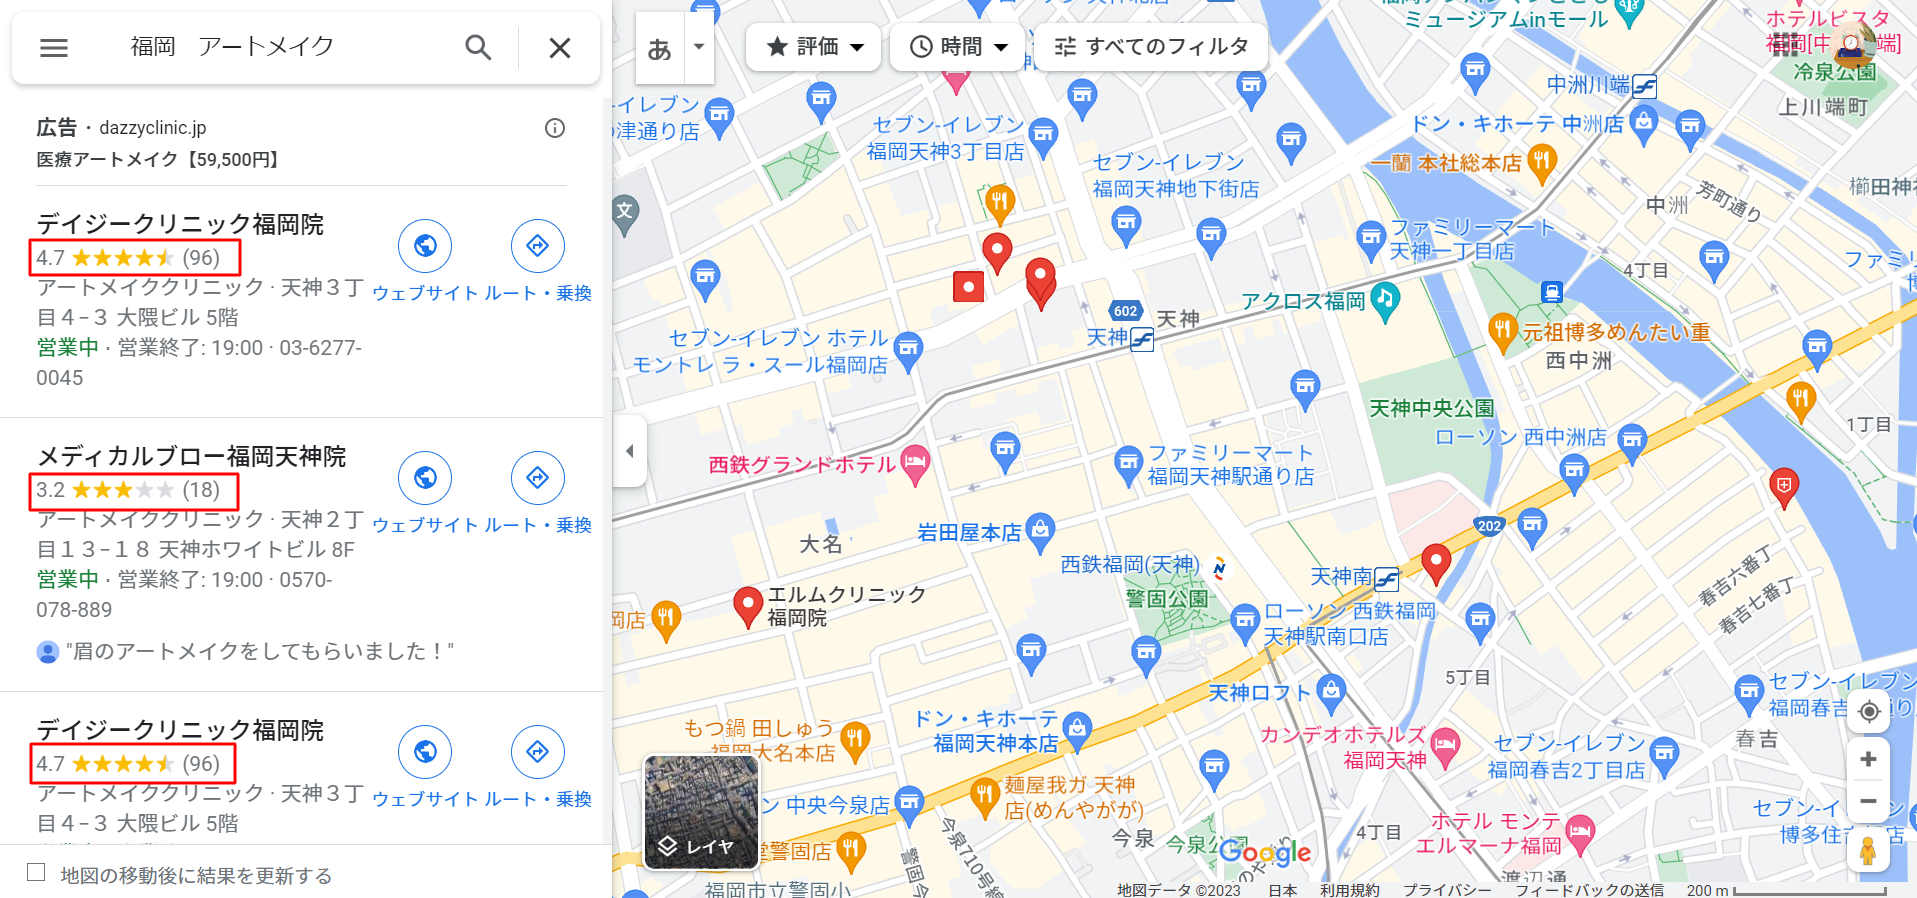 福岡-アートメイク-Google-マップ